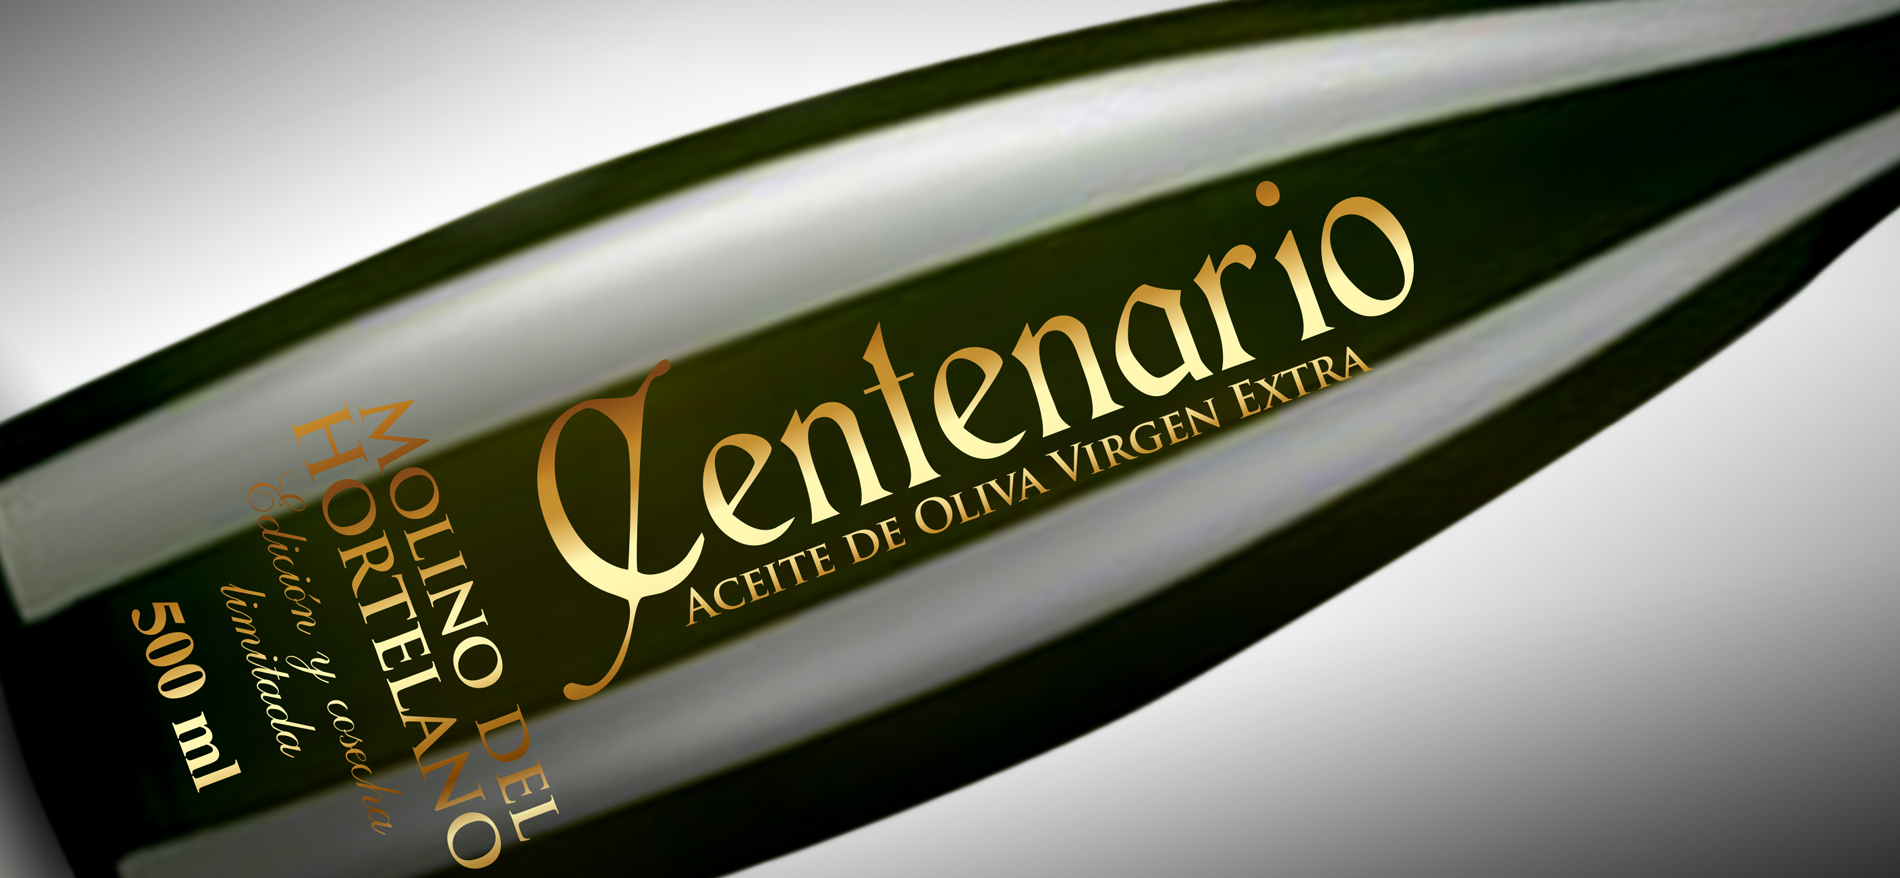 Diseño gráfico y creativo de etiquetas de aceite de oliva virgen extra para la marca MOLINO DEL HORTELANO CENTENARIO EDICION Y COSECHA LIMITADA